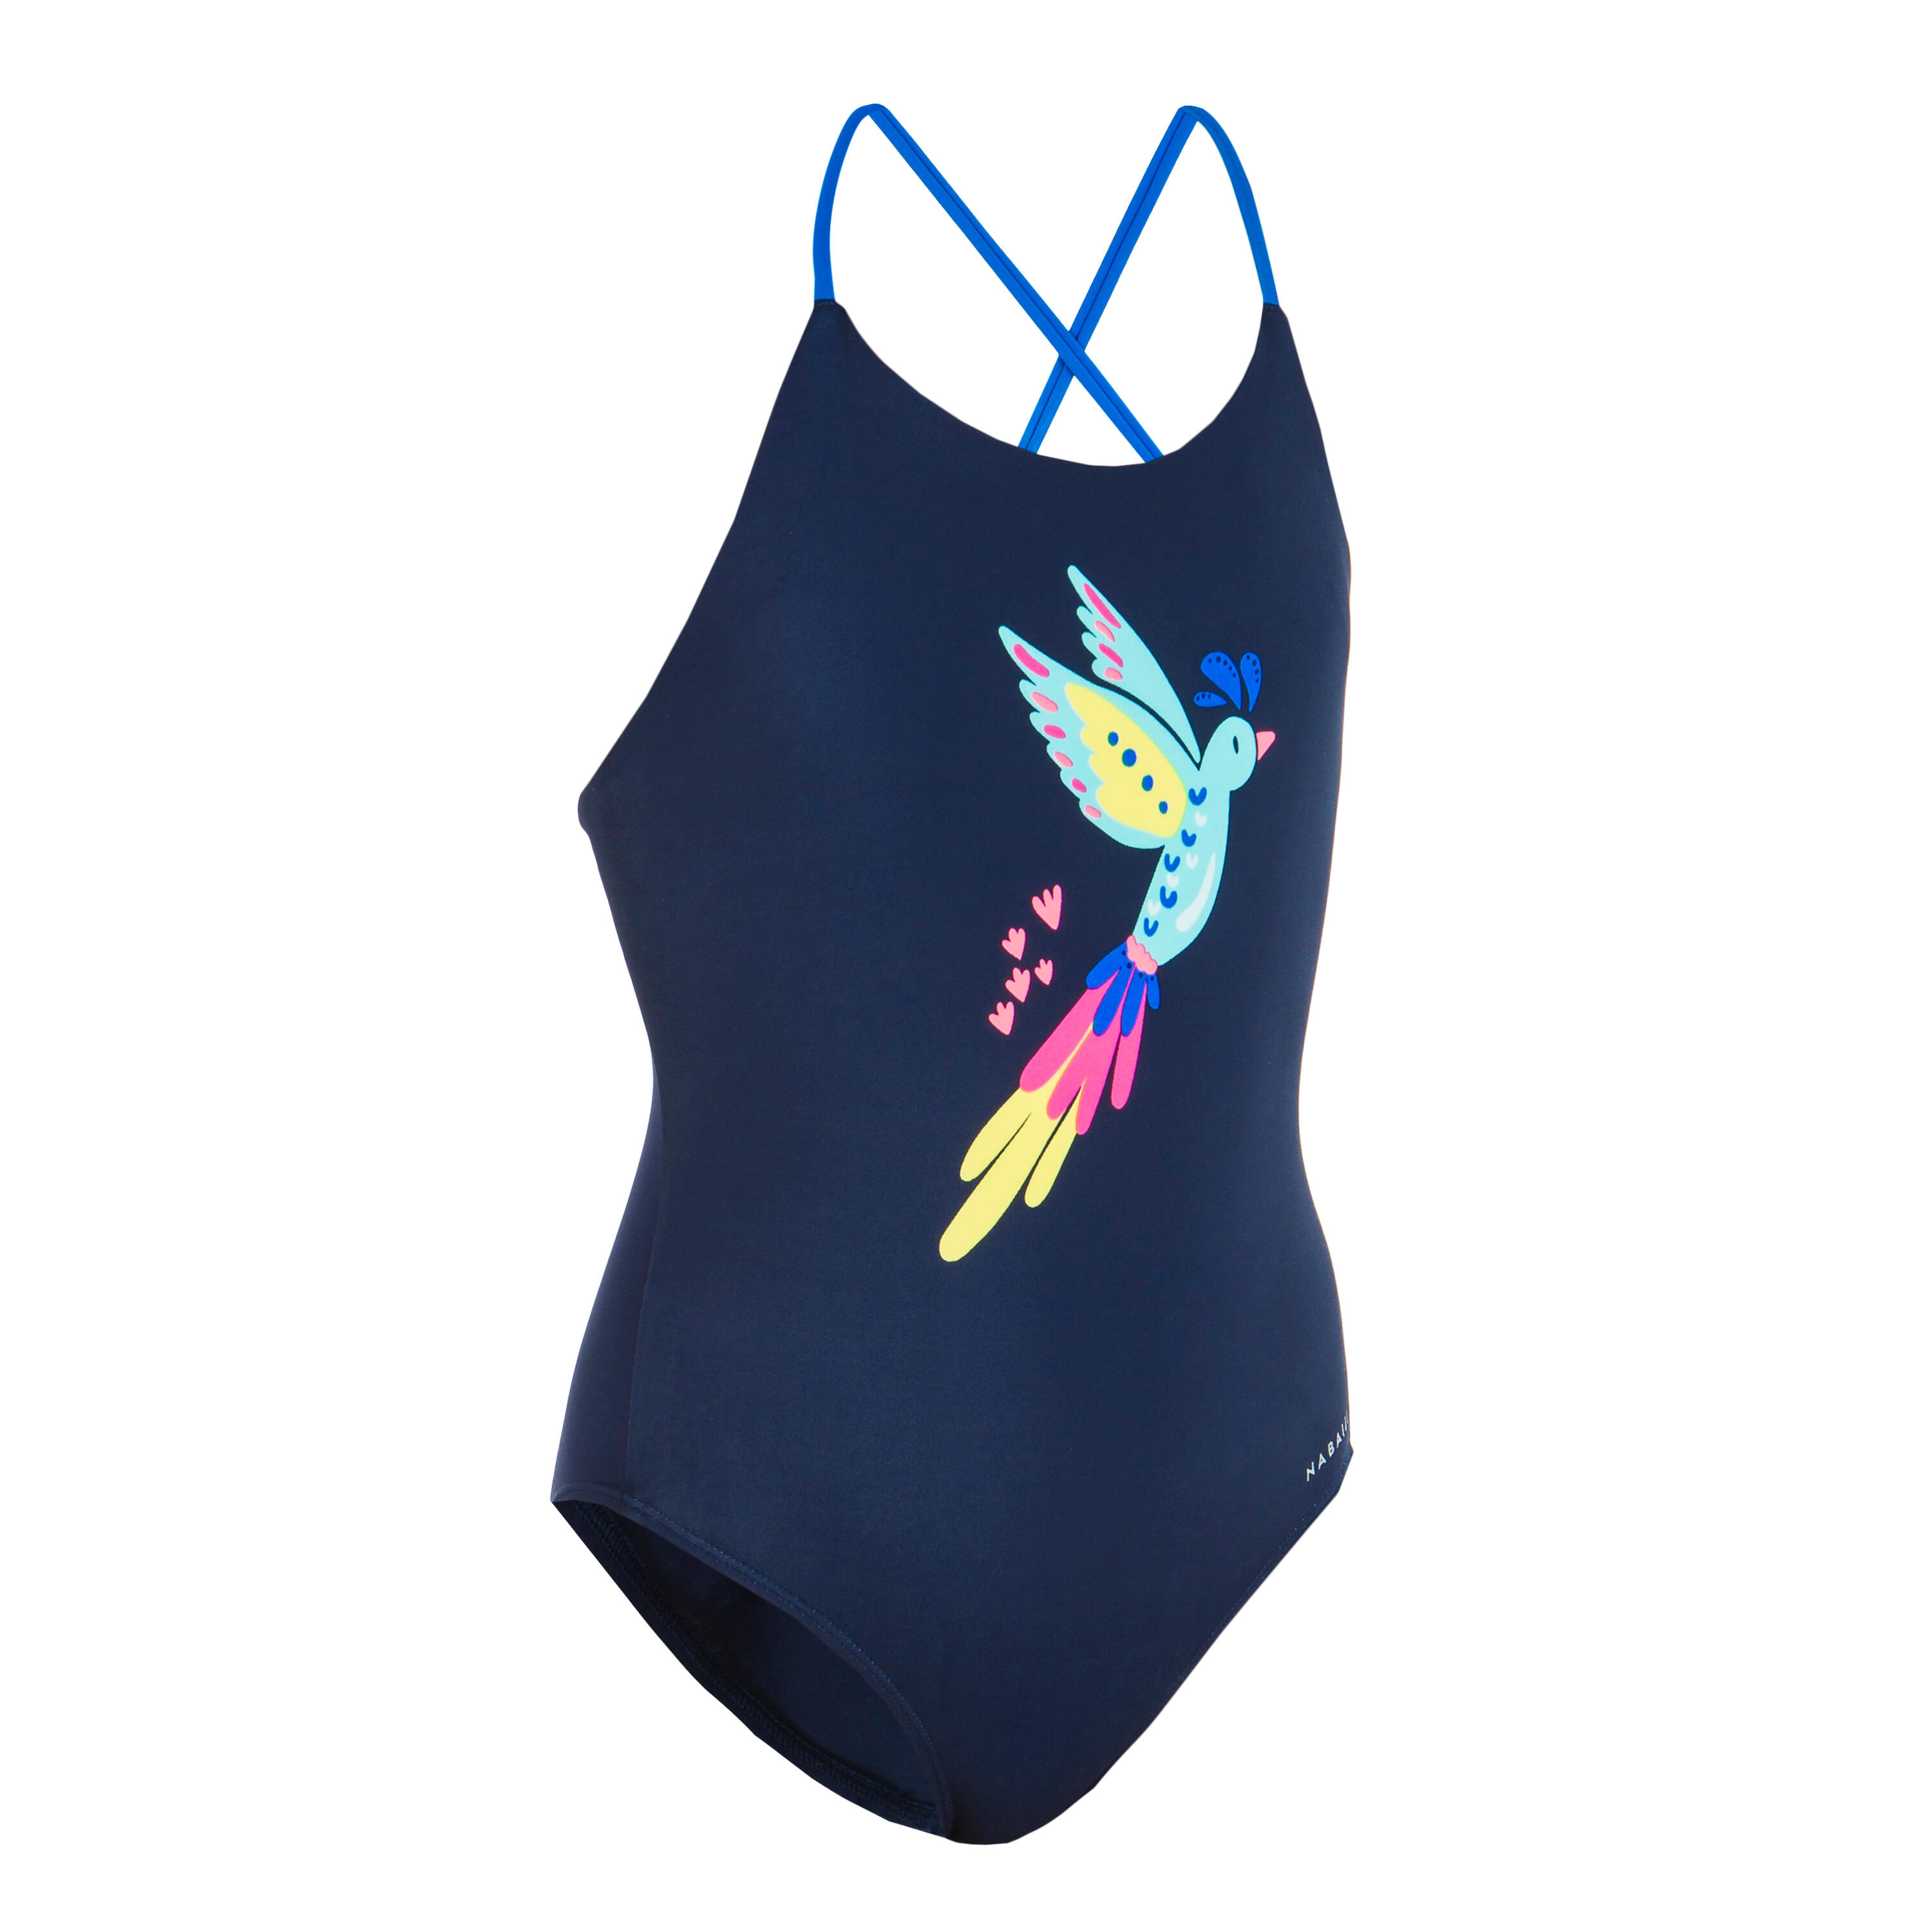 Lila 100 Girl's Swimsuit - Bird Navy 5/7